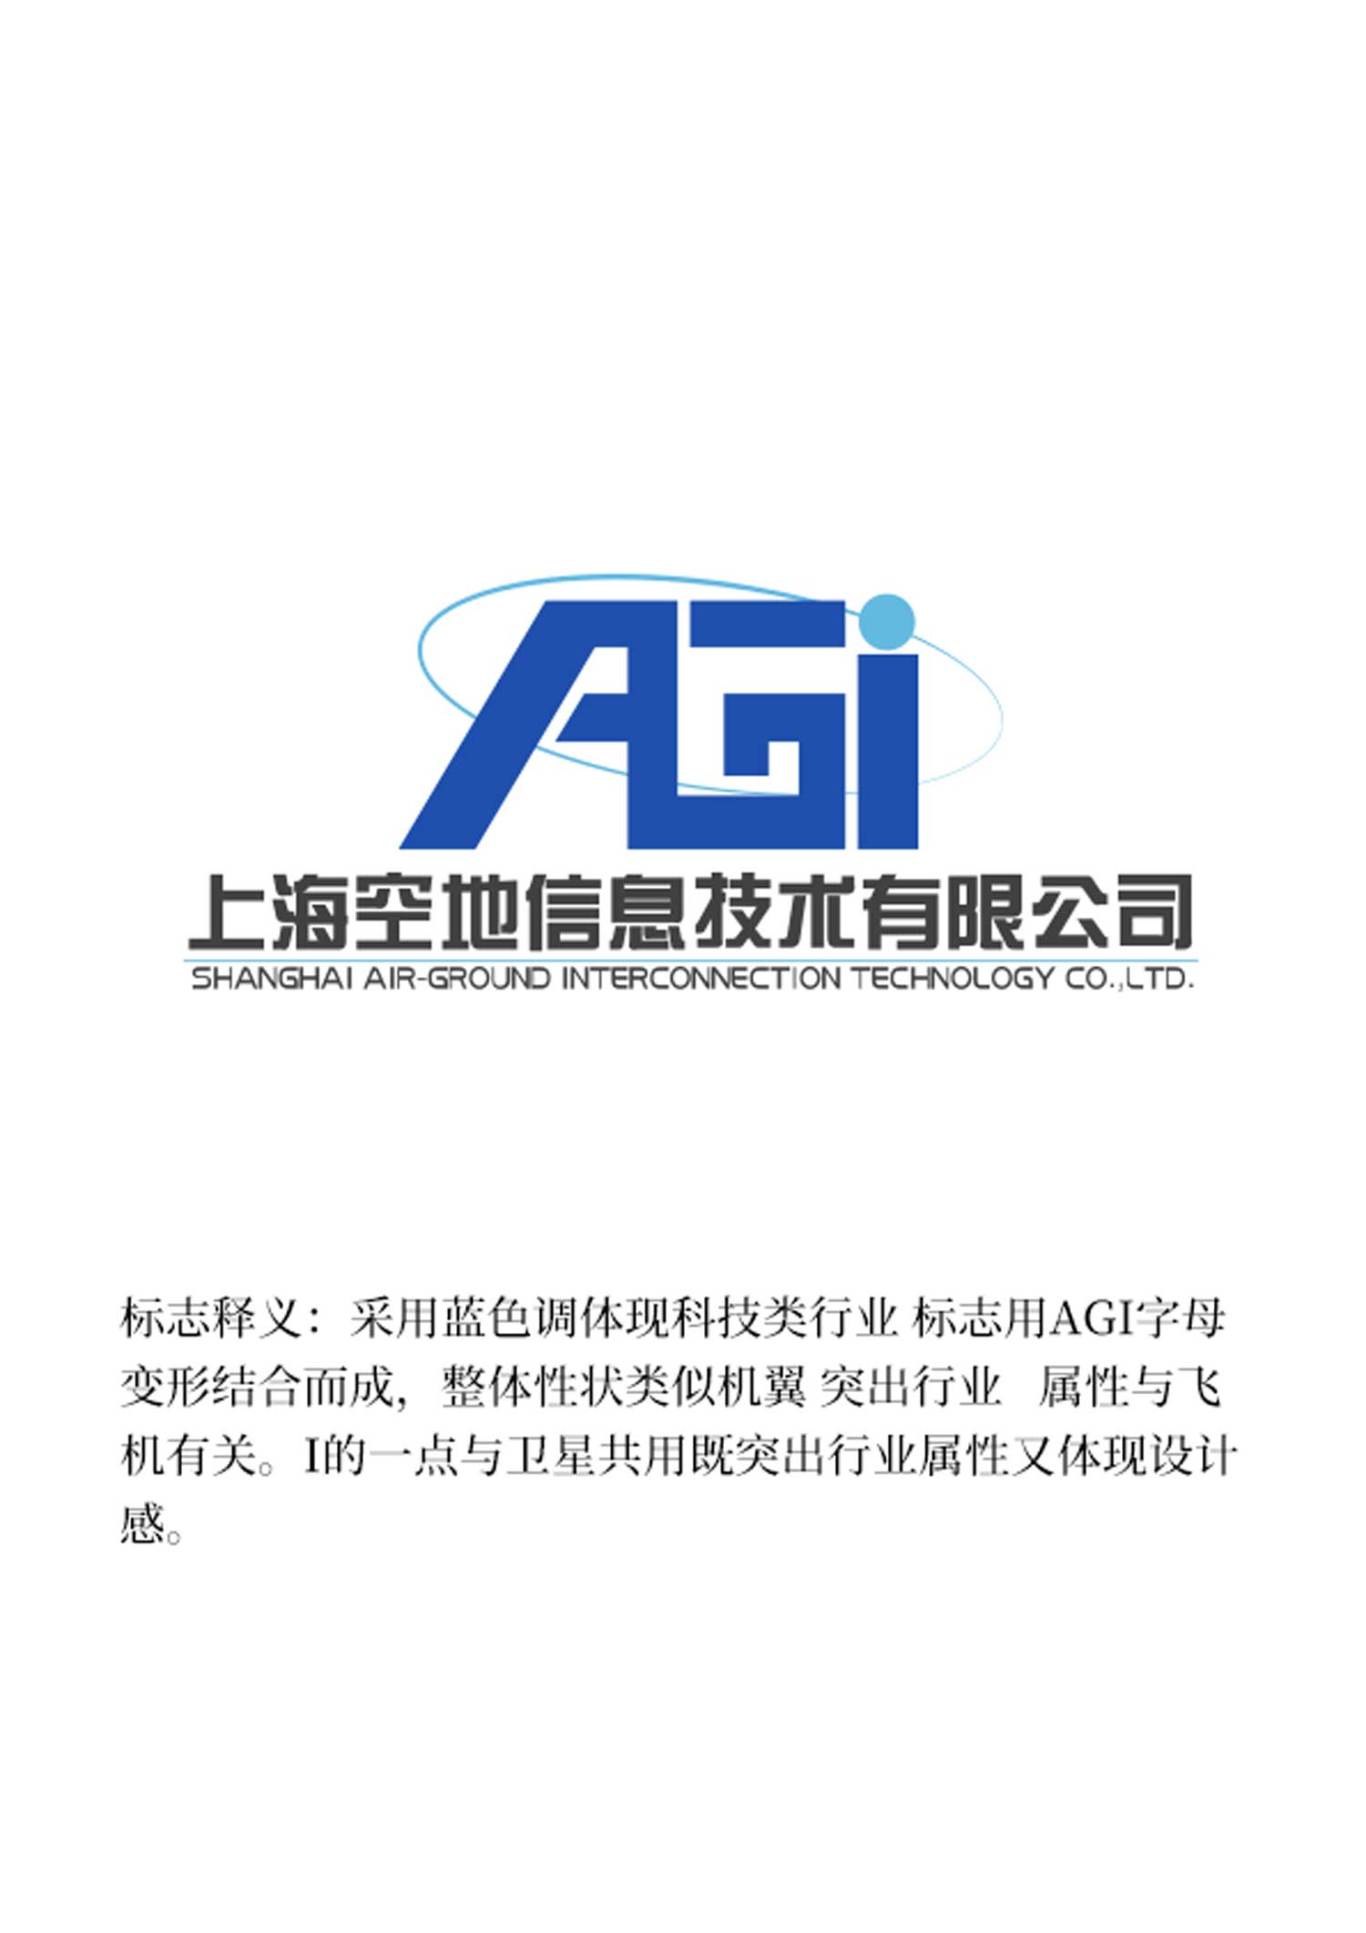 上海空地信息科技科技标志设计图1